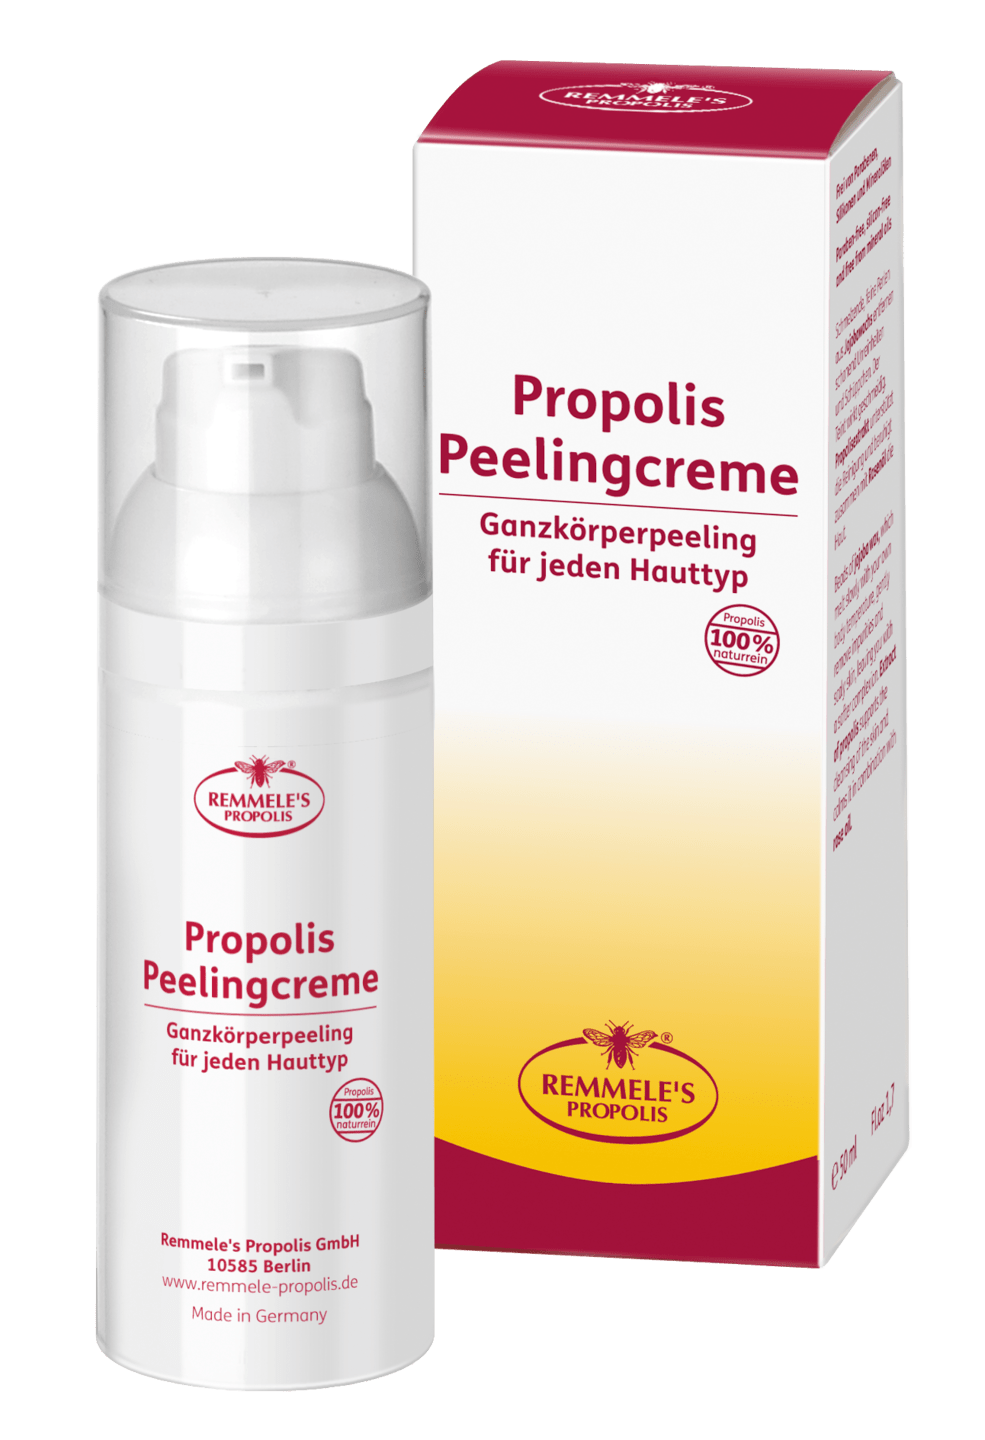 Remmele's Propolis - Propolis Peelingcreme, 50 ml